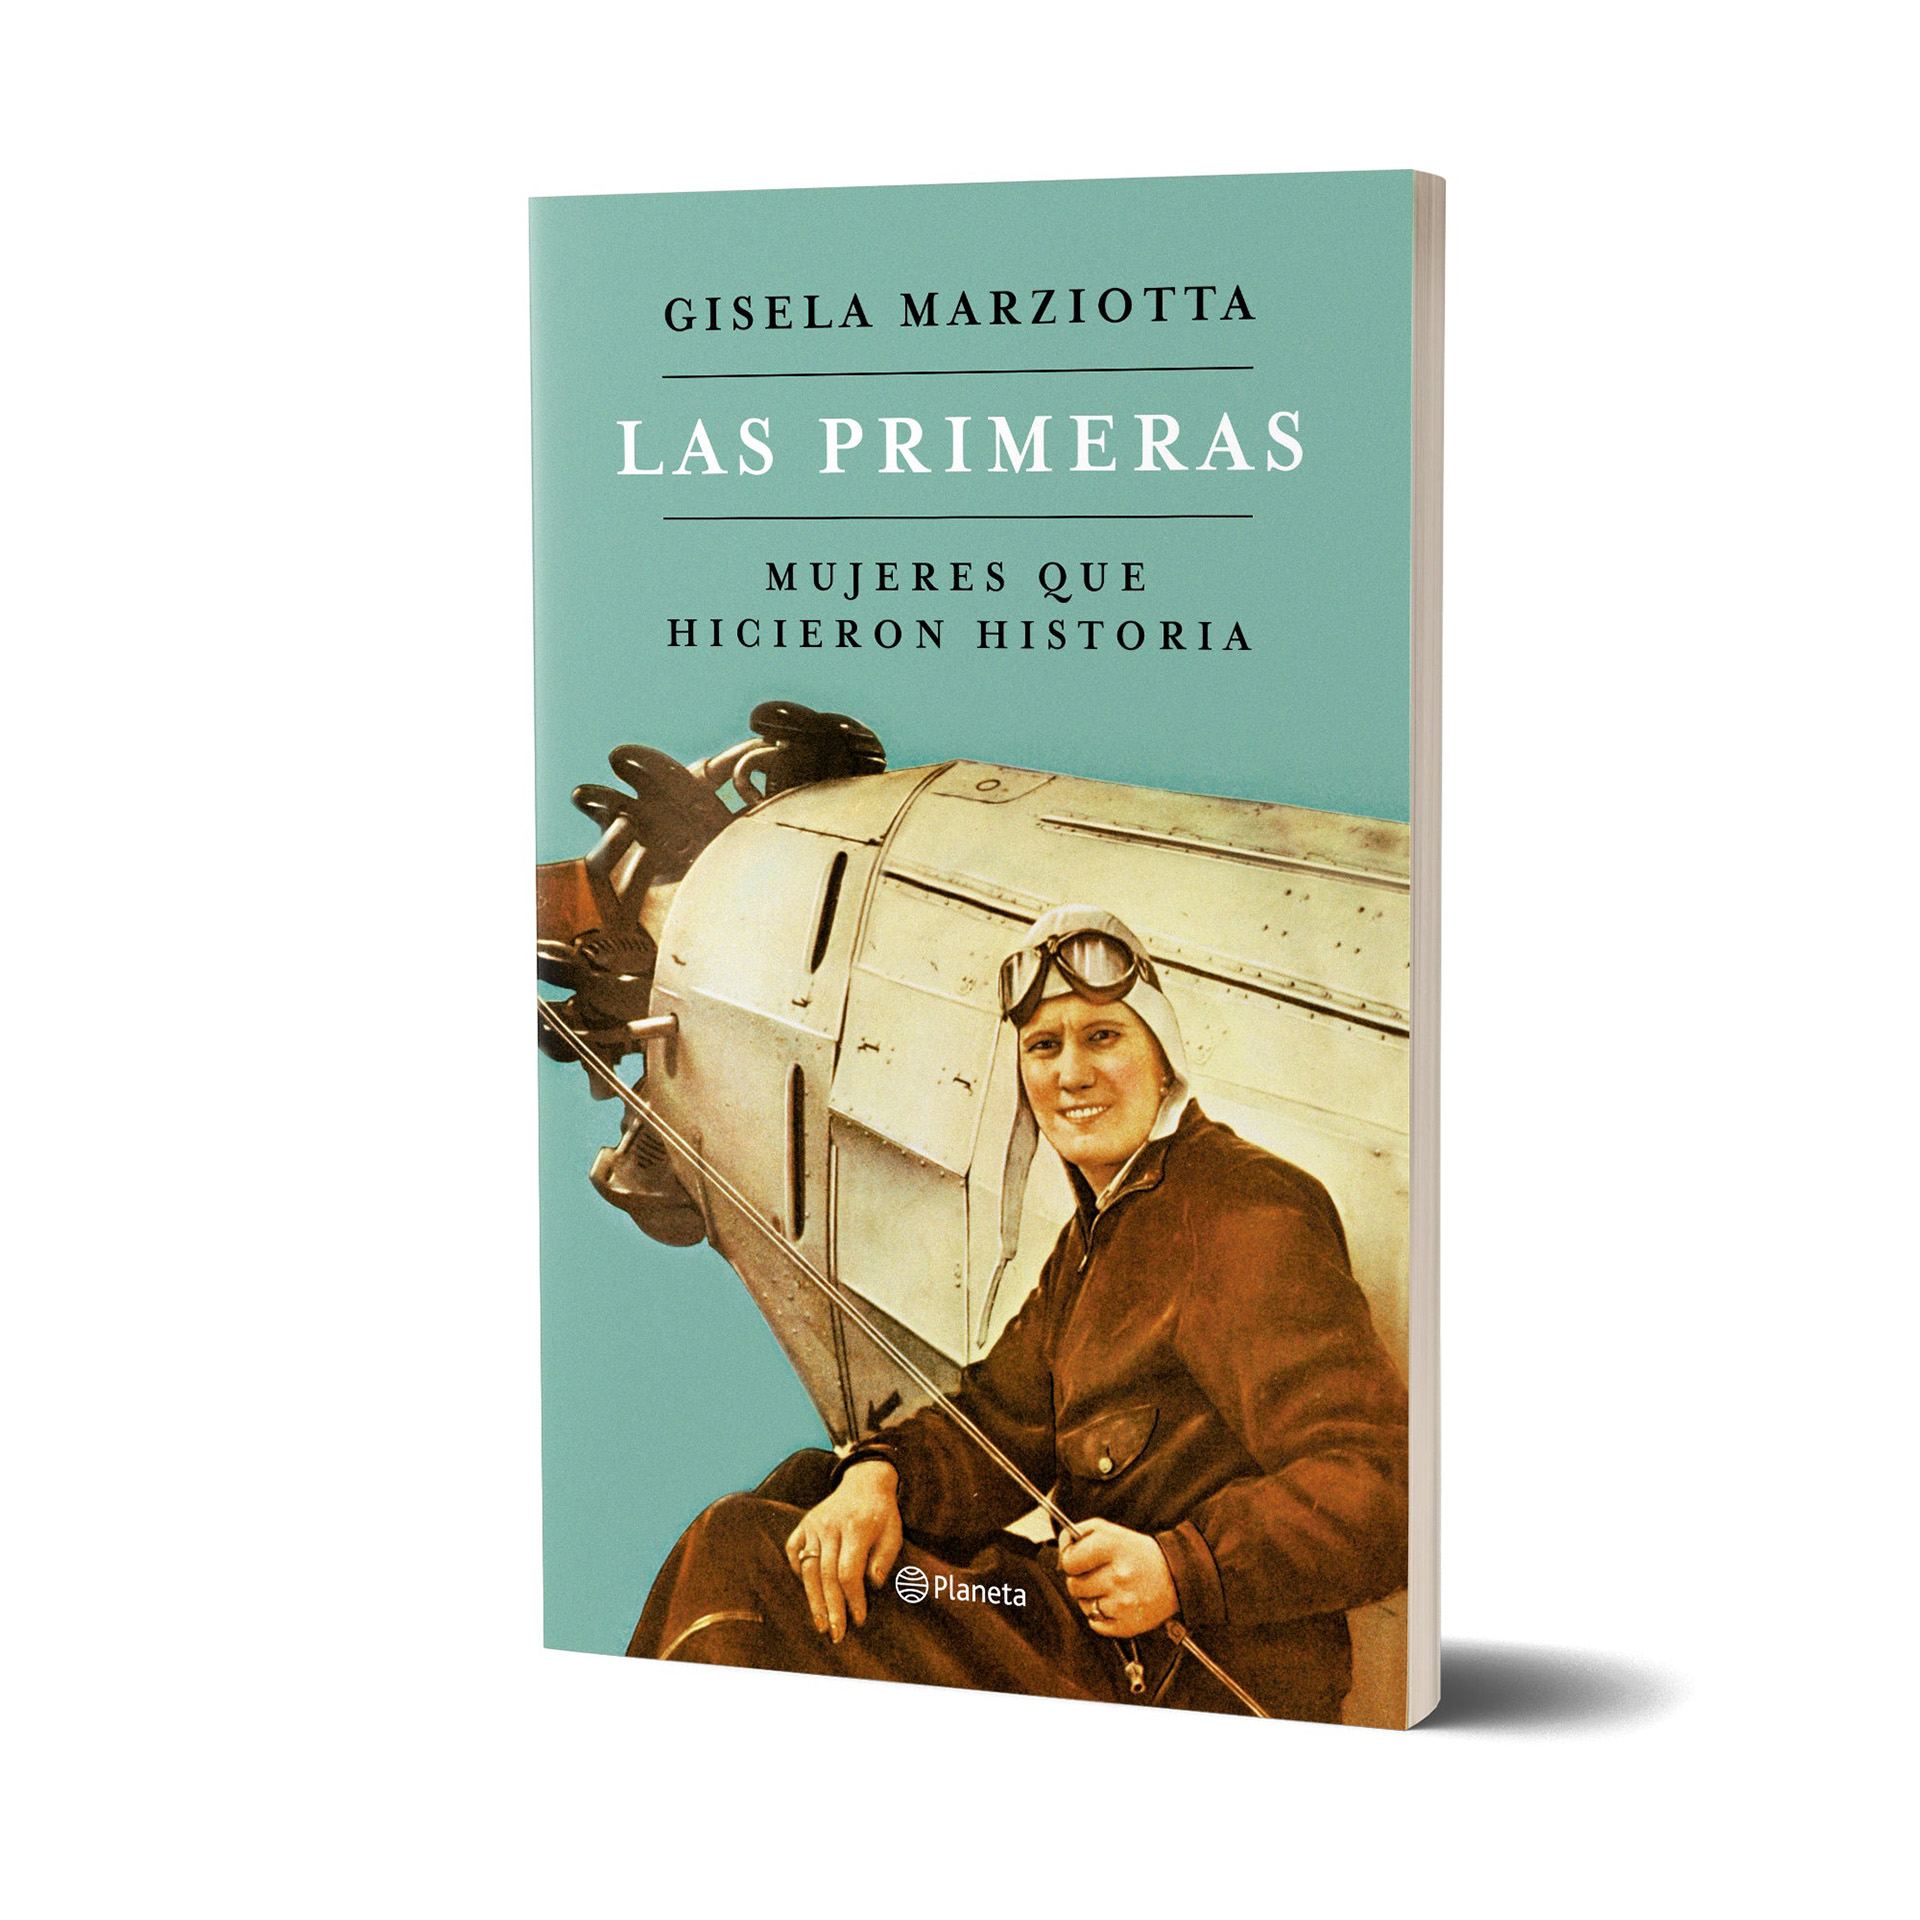 La nueva obra de Gisela Marziotta, quien escribió varios libros, entre ellos "Amores bajo fuego" y "Juan Perón, ese hombre". Actualmente es diputada nacional y coordinadora del observatorio Gente en Movimiento